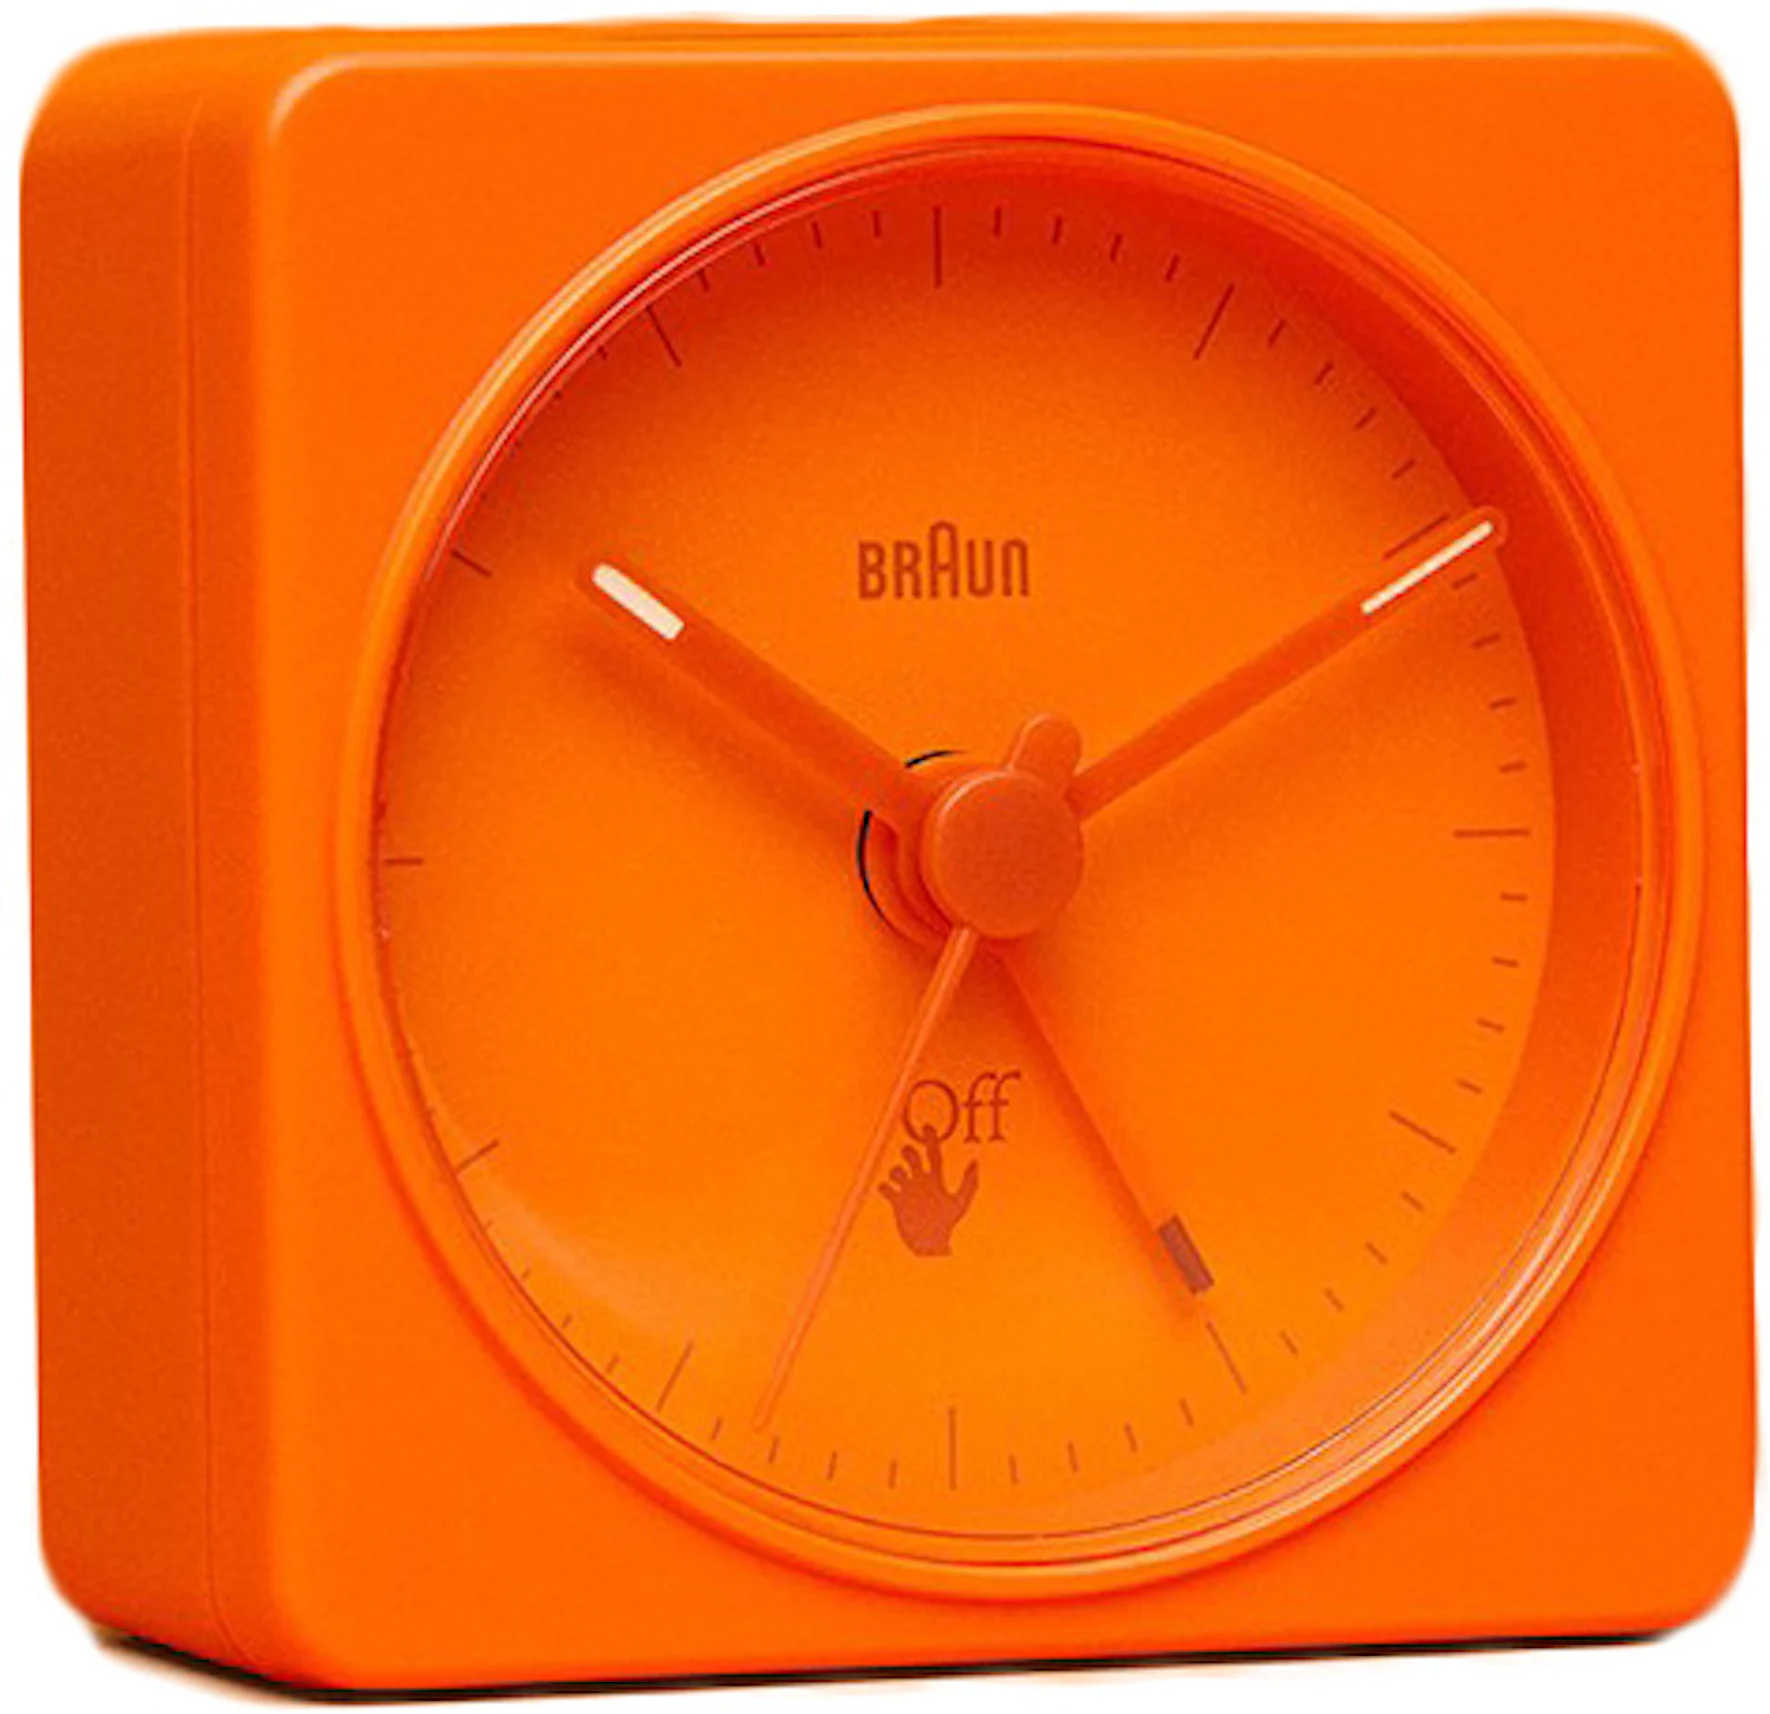 Novedad Braun: Nuevo Reloj Despertador conectado. - Cardell Watch Store